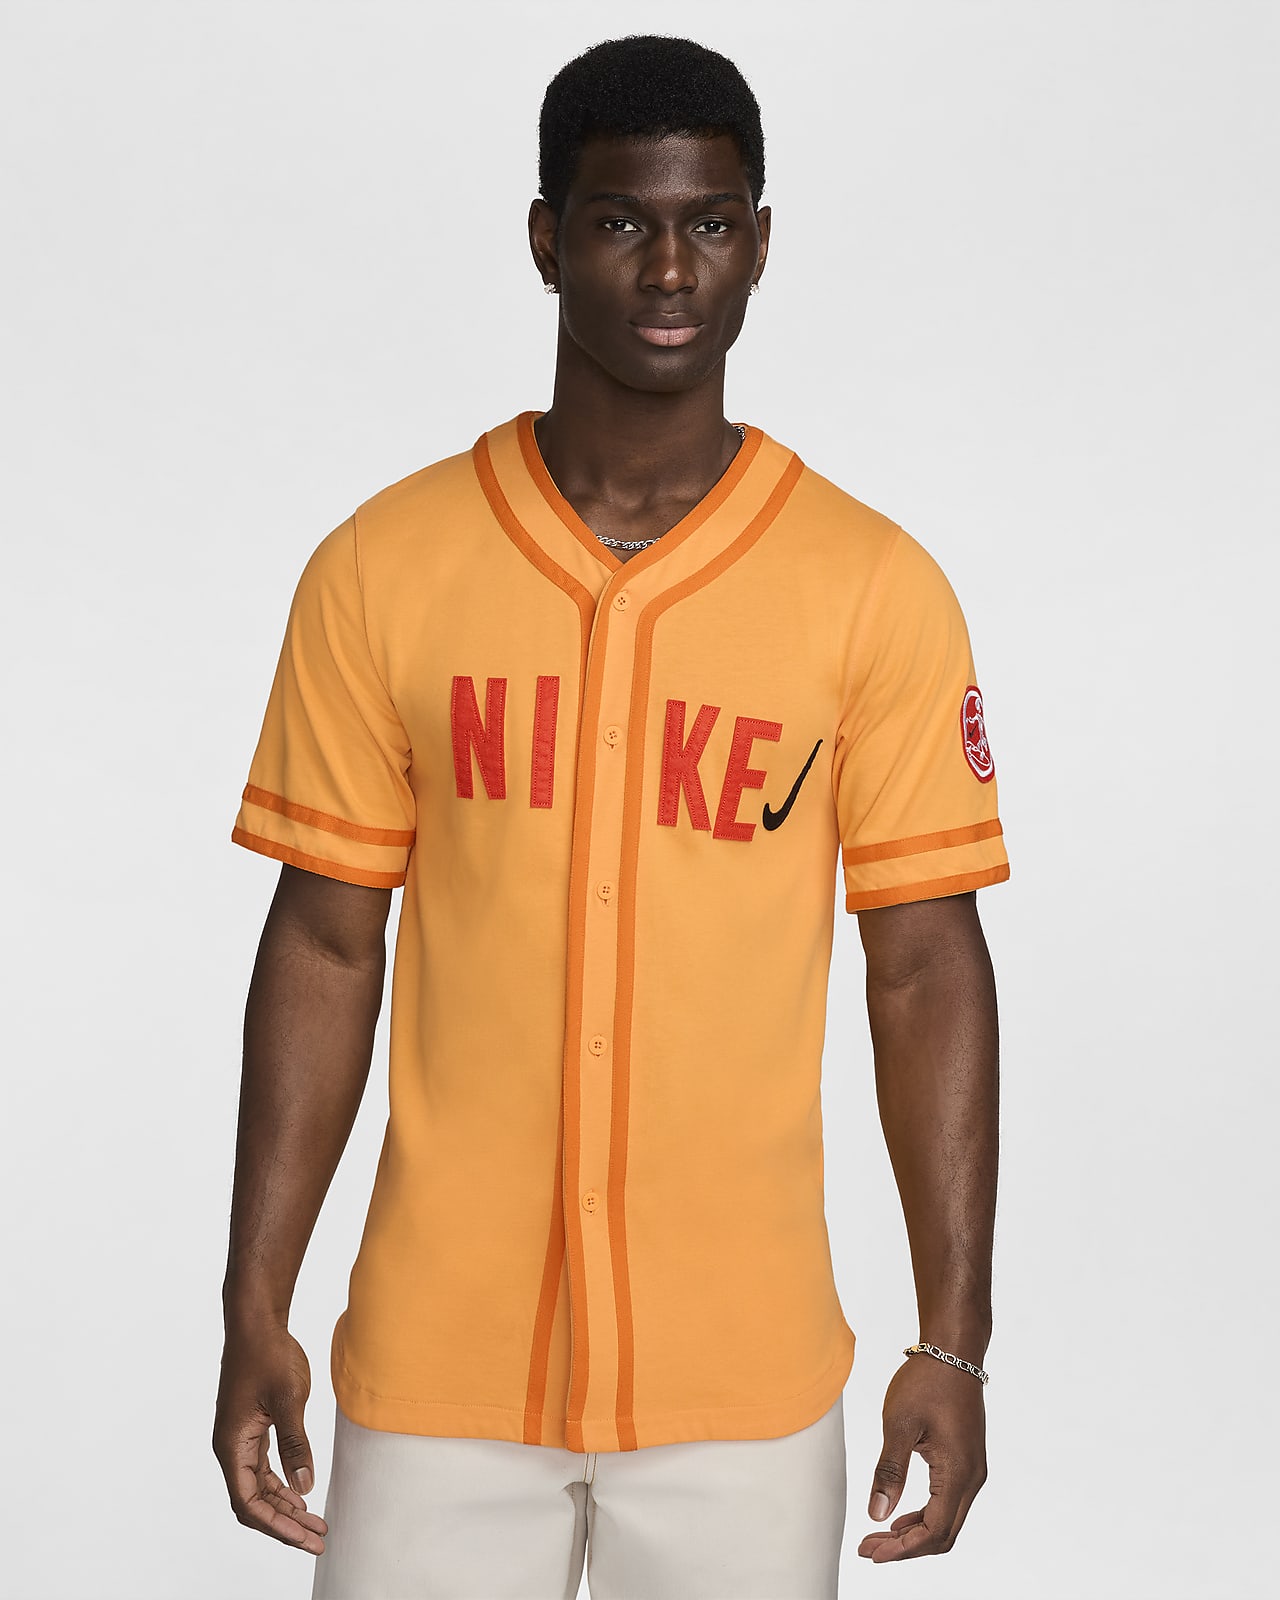 Nike Sportswear Men's Baseball Jersey